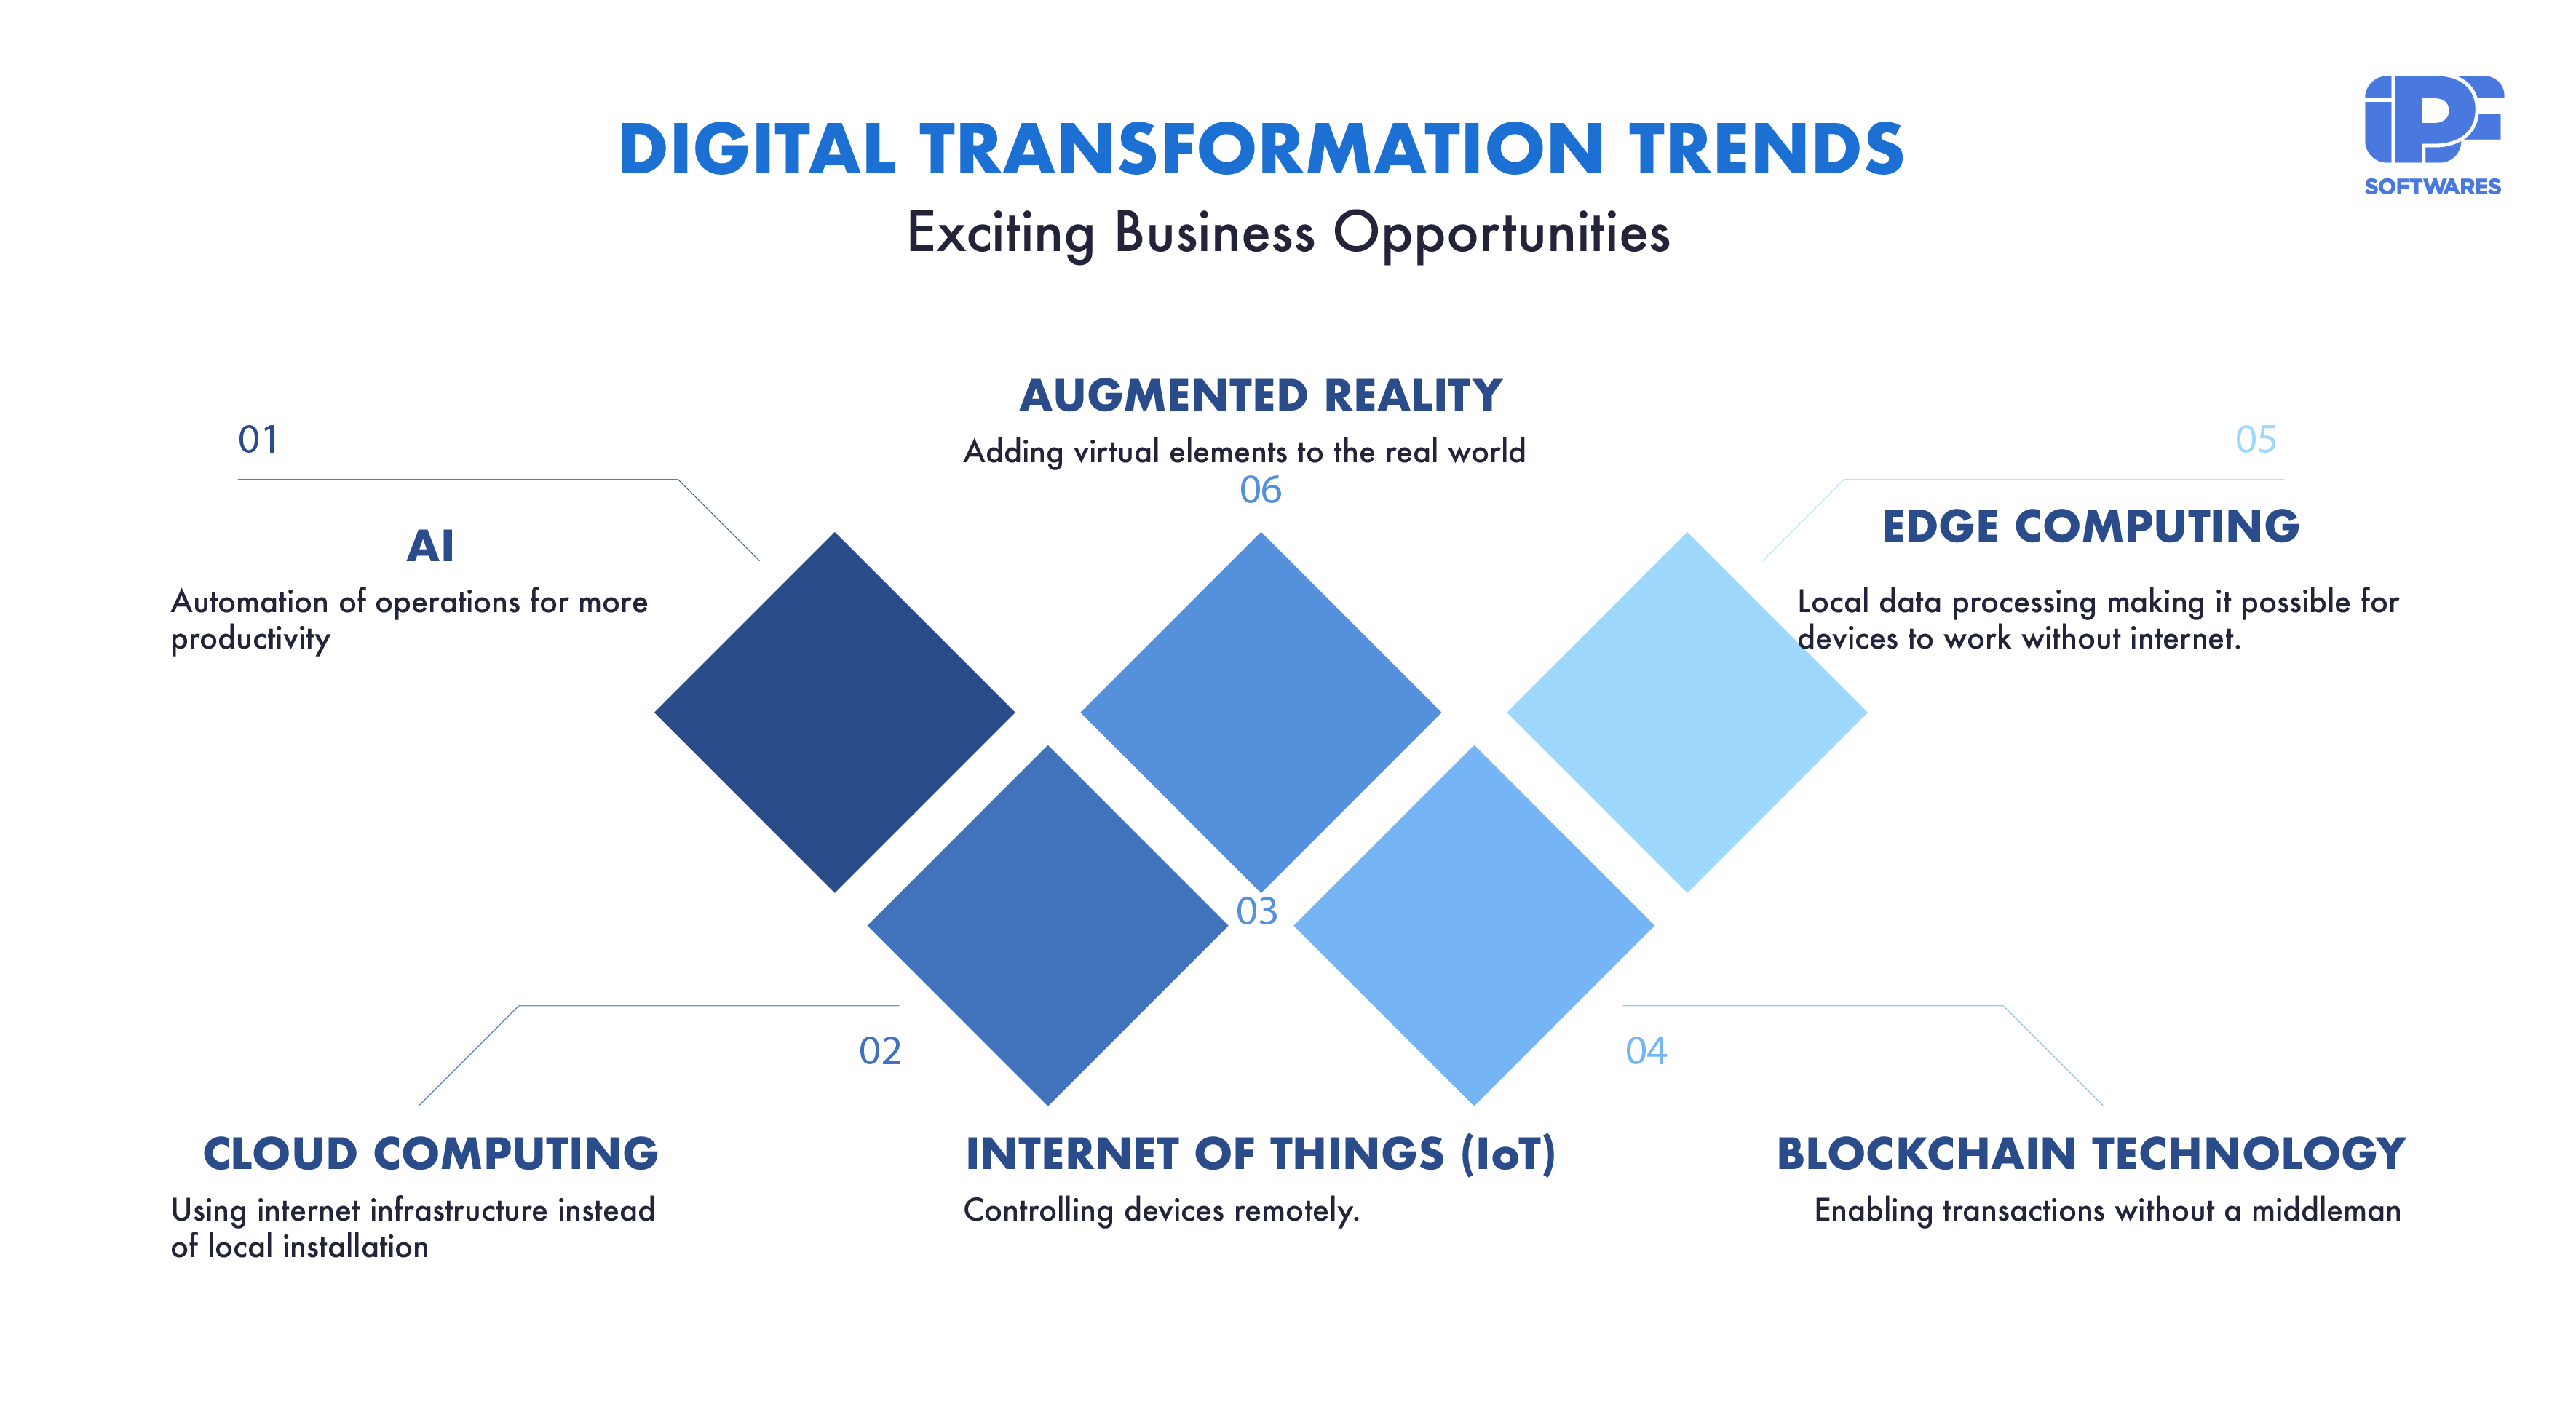 Digital Transformation Trends